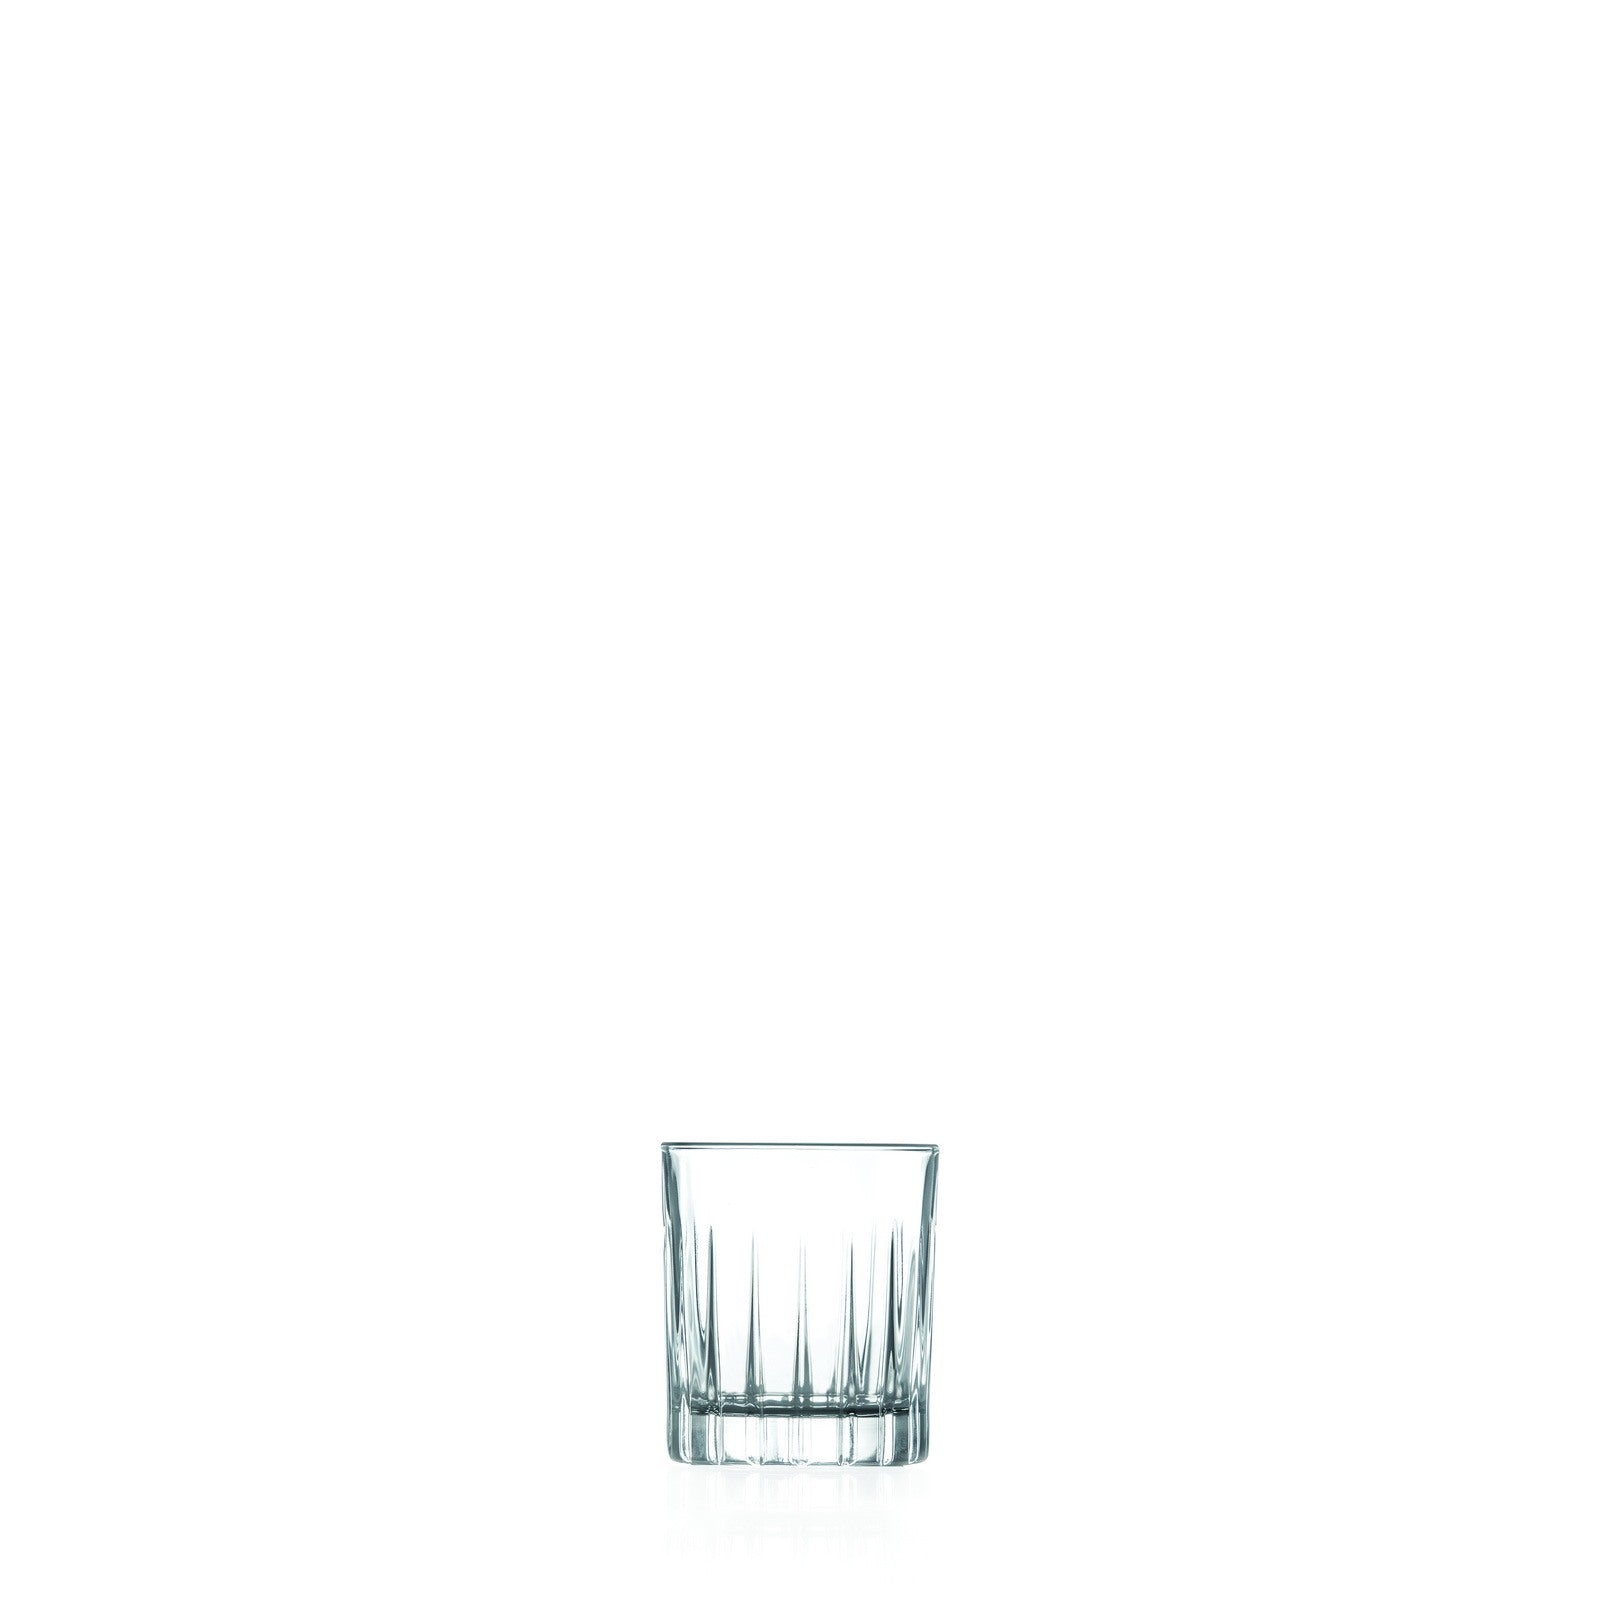 immagine-1-rcr-cristalleria-italiana-timeless-5-set-da-6-bicchieri-liquore-in-vetro-ean-8007815258789